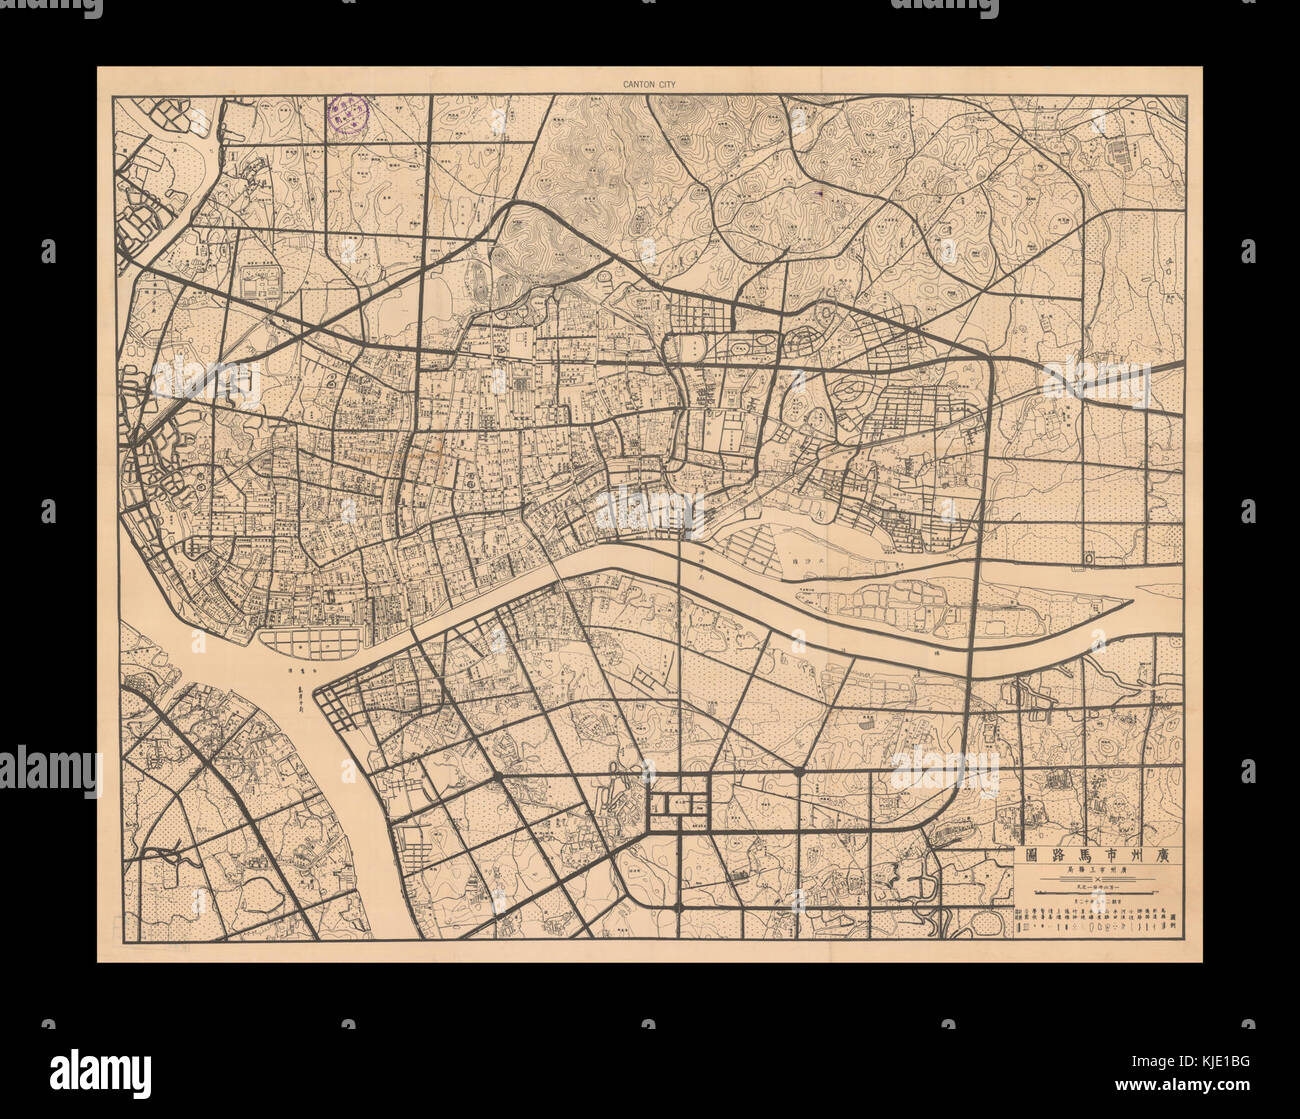 Canton City Map 1936 KJE1BG 